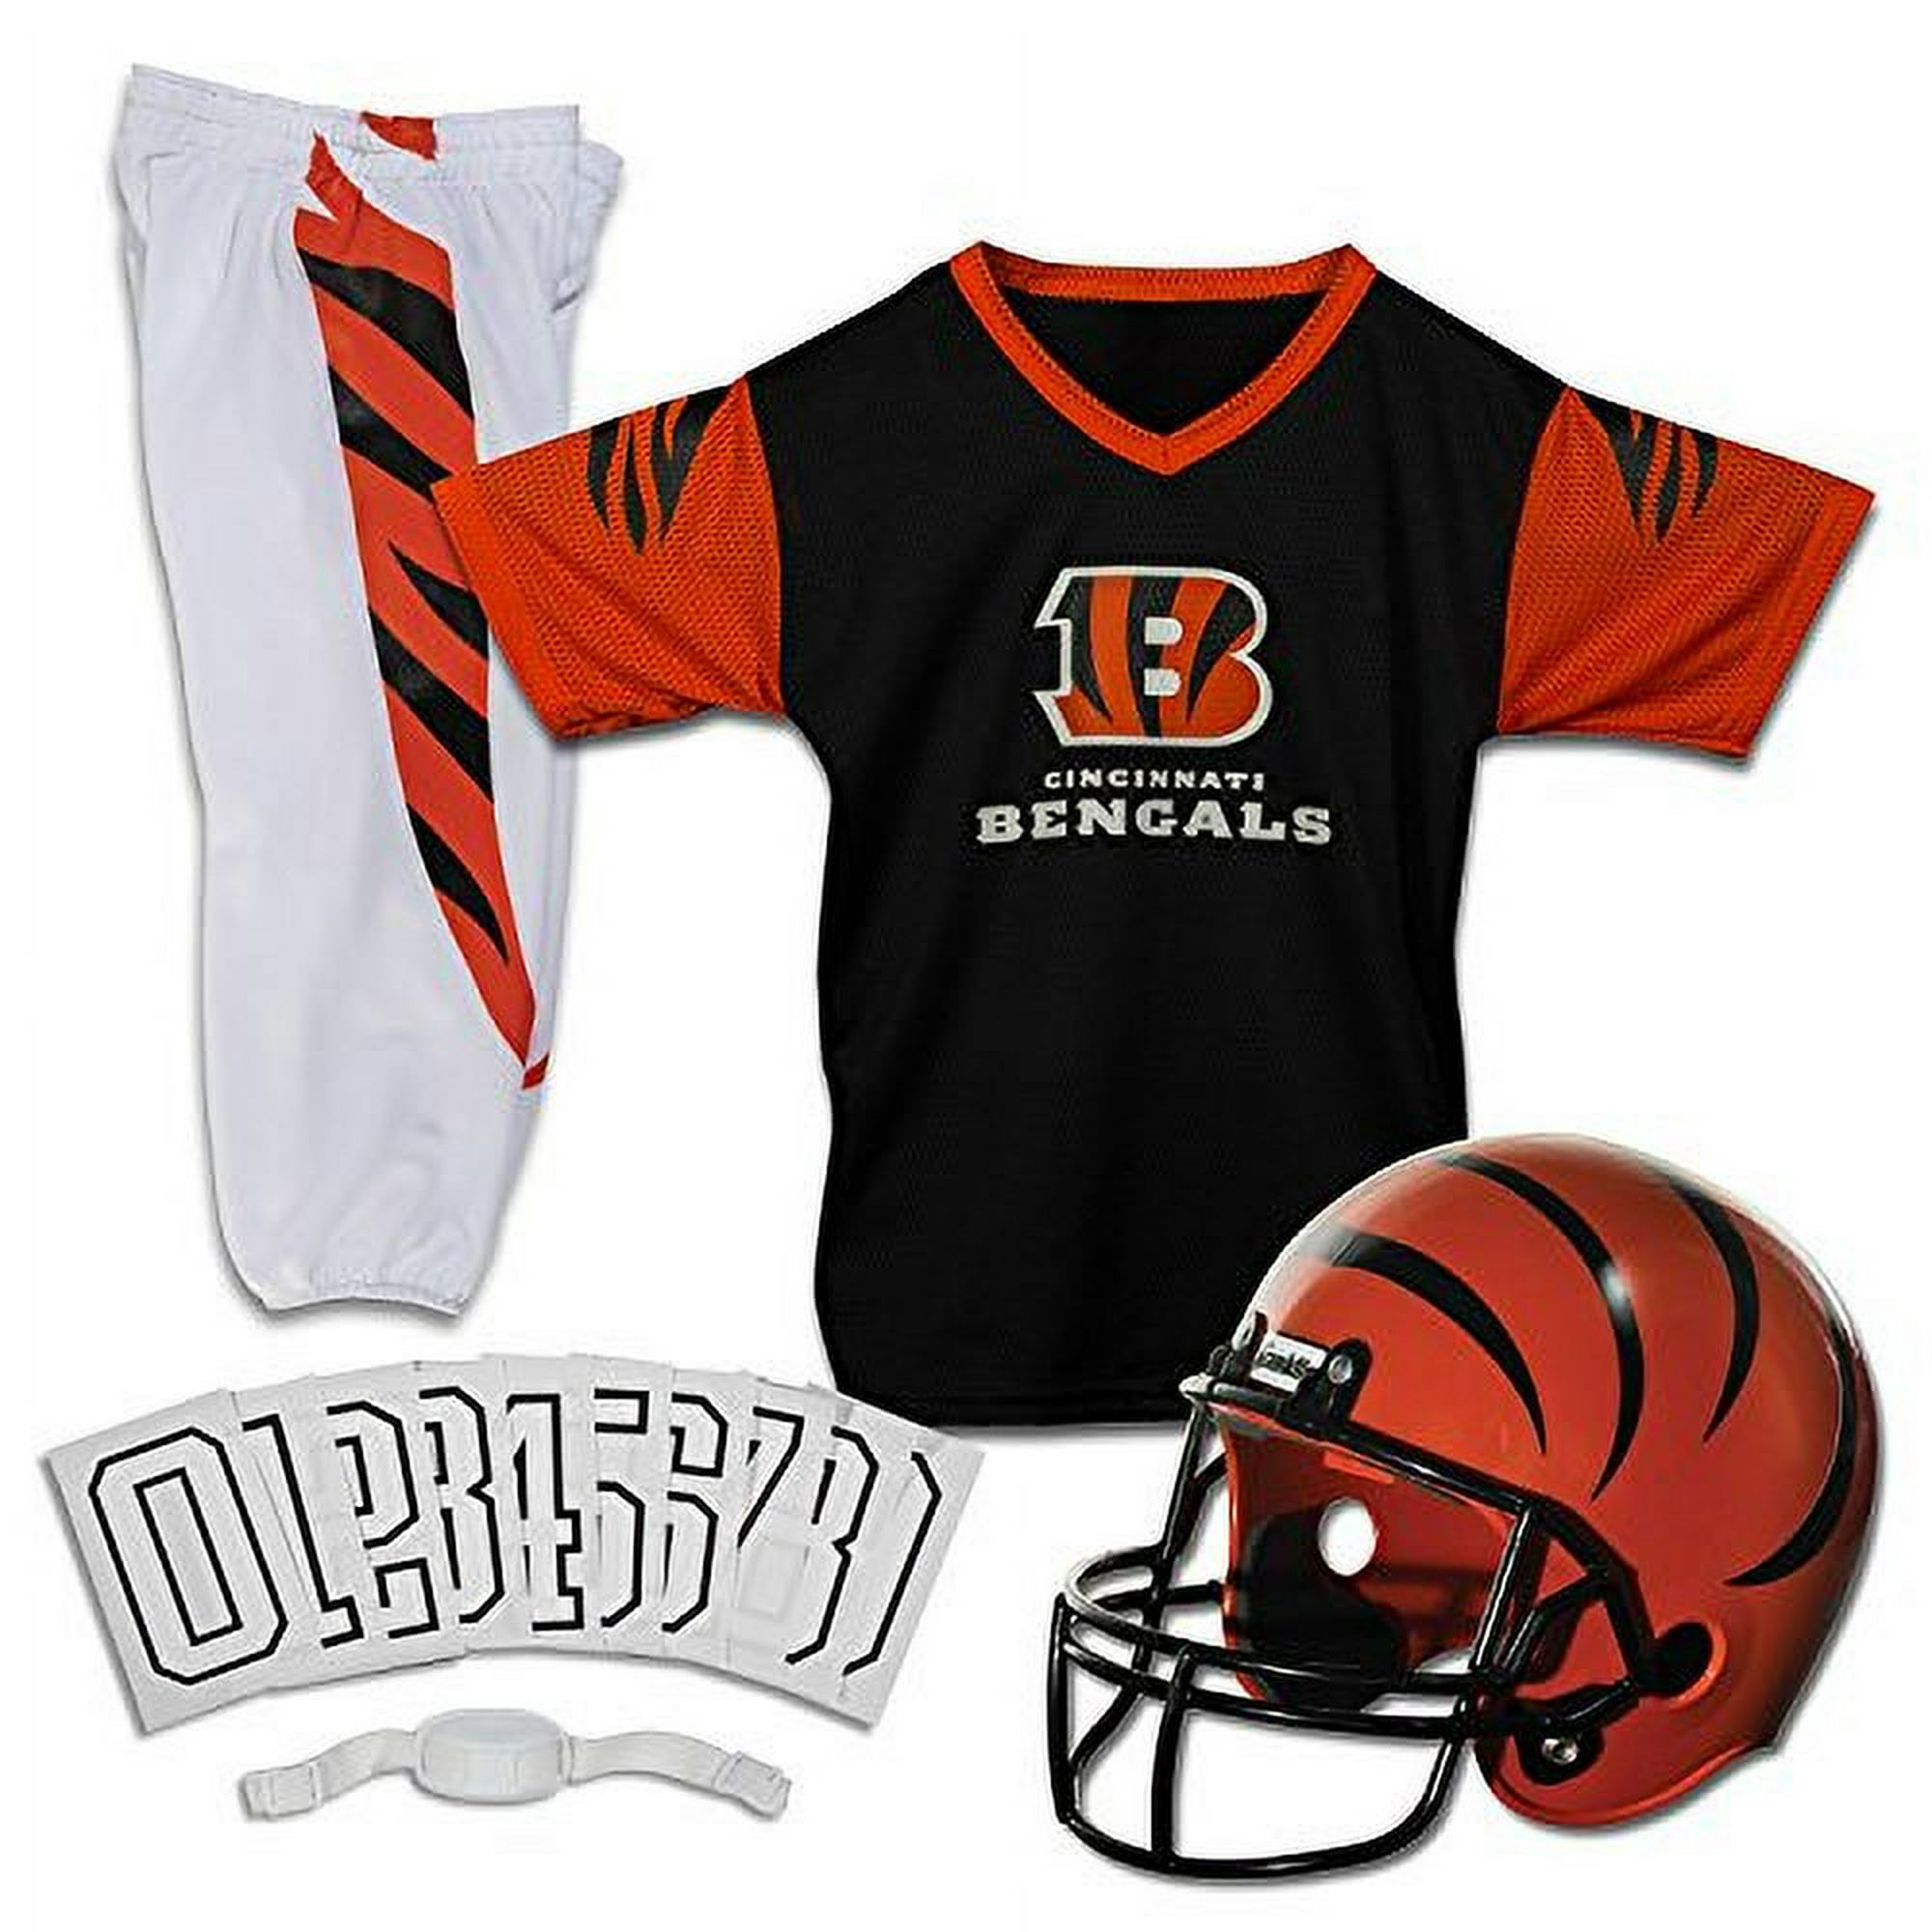 Conjunto de casco y camiseta de fútbol americano para niños de los Tampa  Bay Buccaneers de la NFL - Disfraz de uniforme de fútbol juvenil - Casco,  camiseta, barbiquejo - Juvenil M